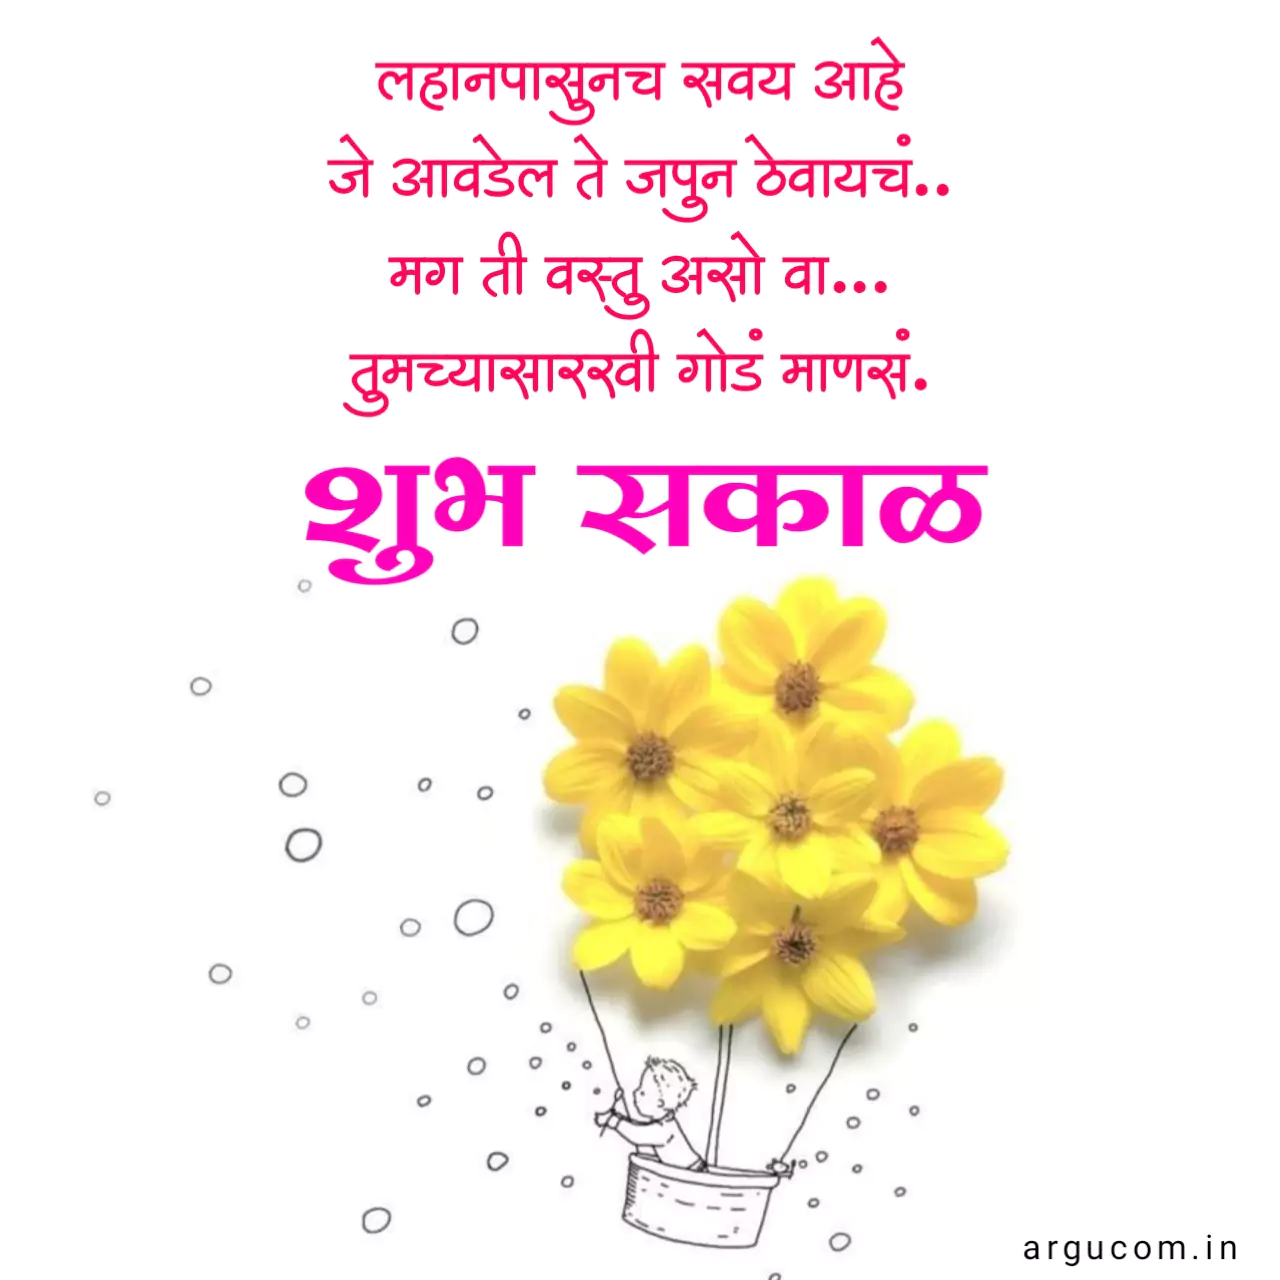 Good morning quotes marathi